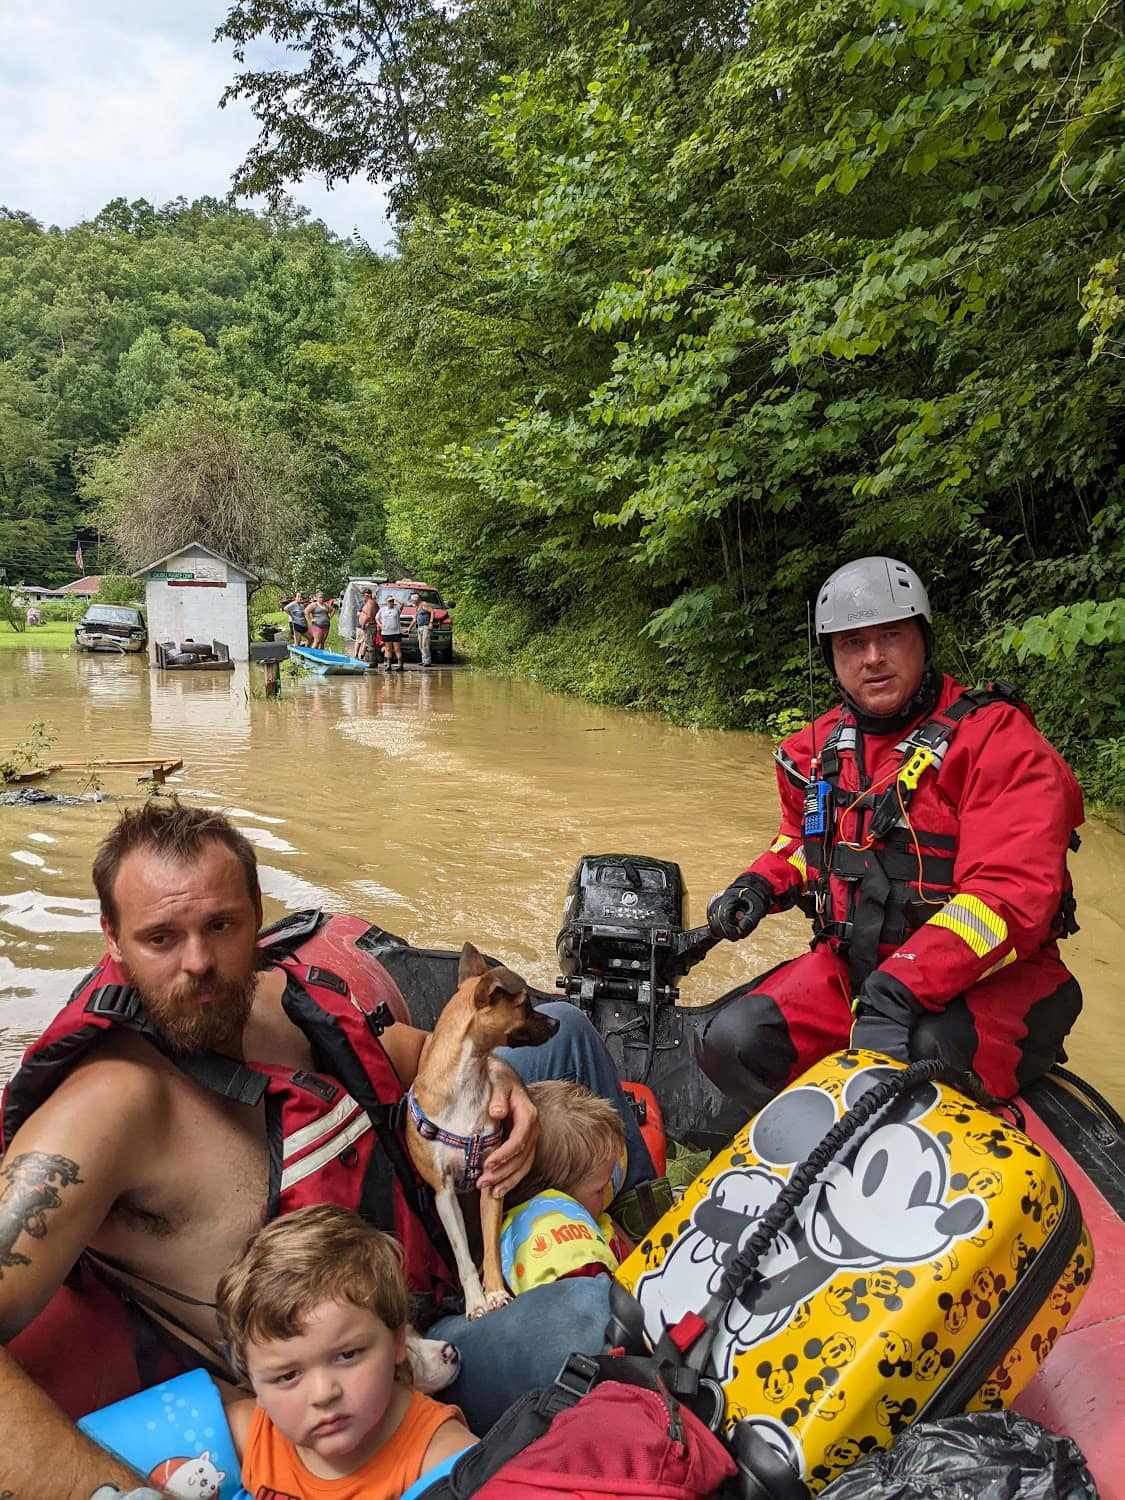 Un miembro del equipo de rescate evacúa a los residentes de sus casas en un bote a través de las calles inundadas en el condado de Breathitt, Kentucky, Estados Unidos, el 28 de julio de 2022 (REUTERS)